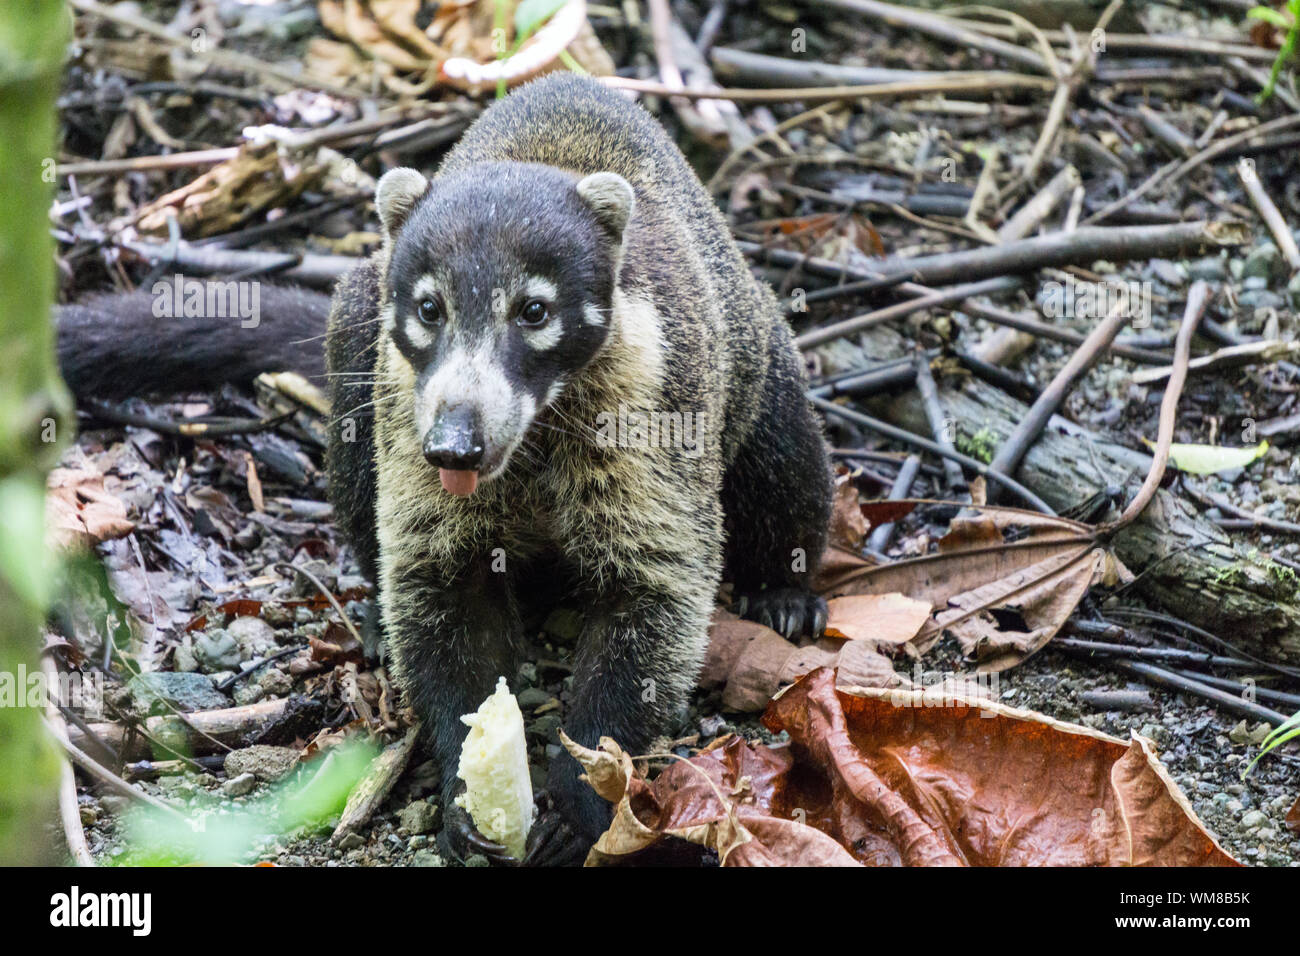 Coatimundi (Coati) en mangeant des fruits, bananes sauvages du parc national Corcovado, Costa Rica Banque D'Images